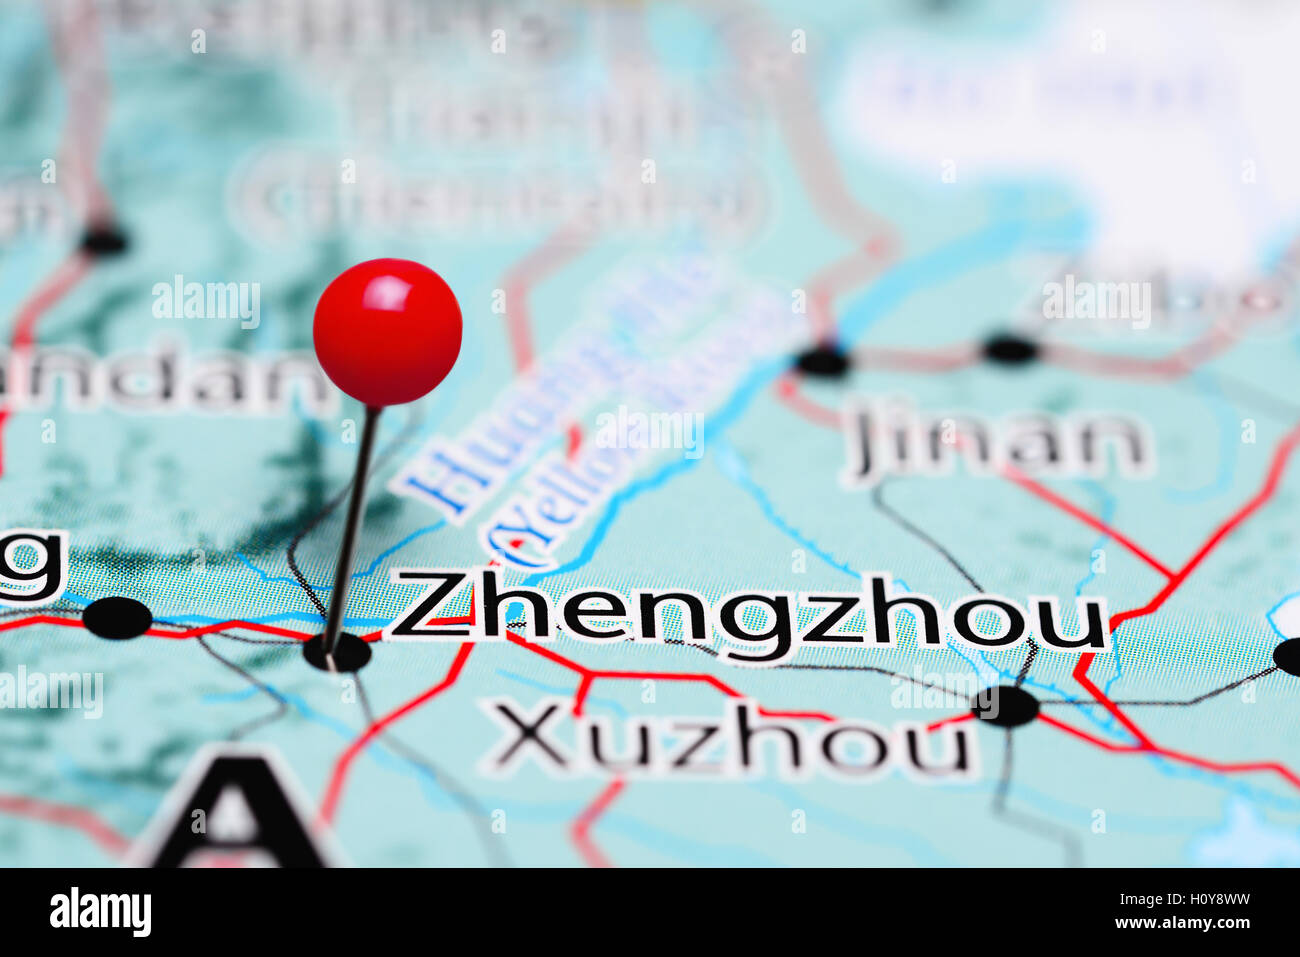 Zhengzhou pinned on a map of China Stock Photo